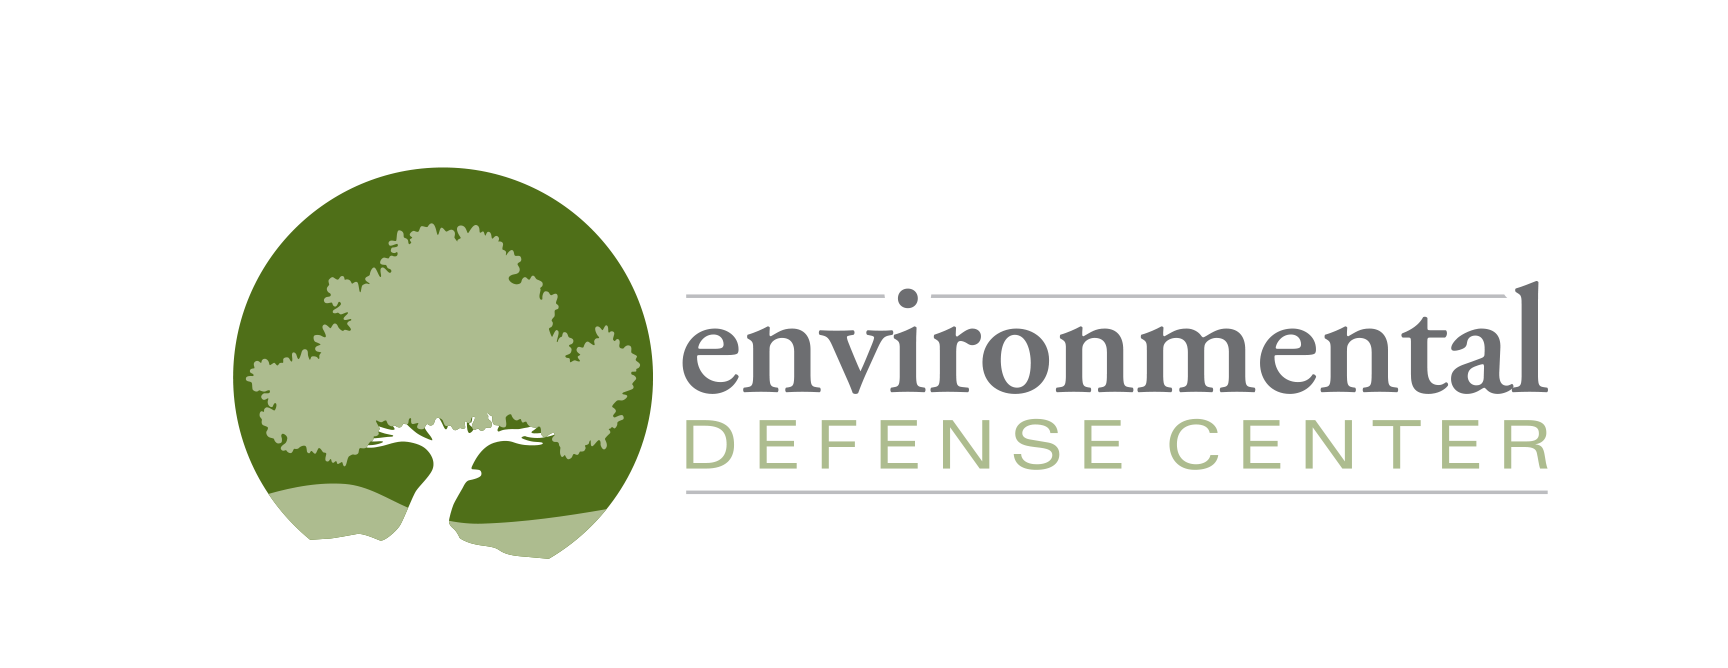 Environmental Defense Center logo